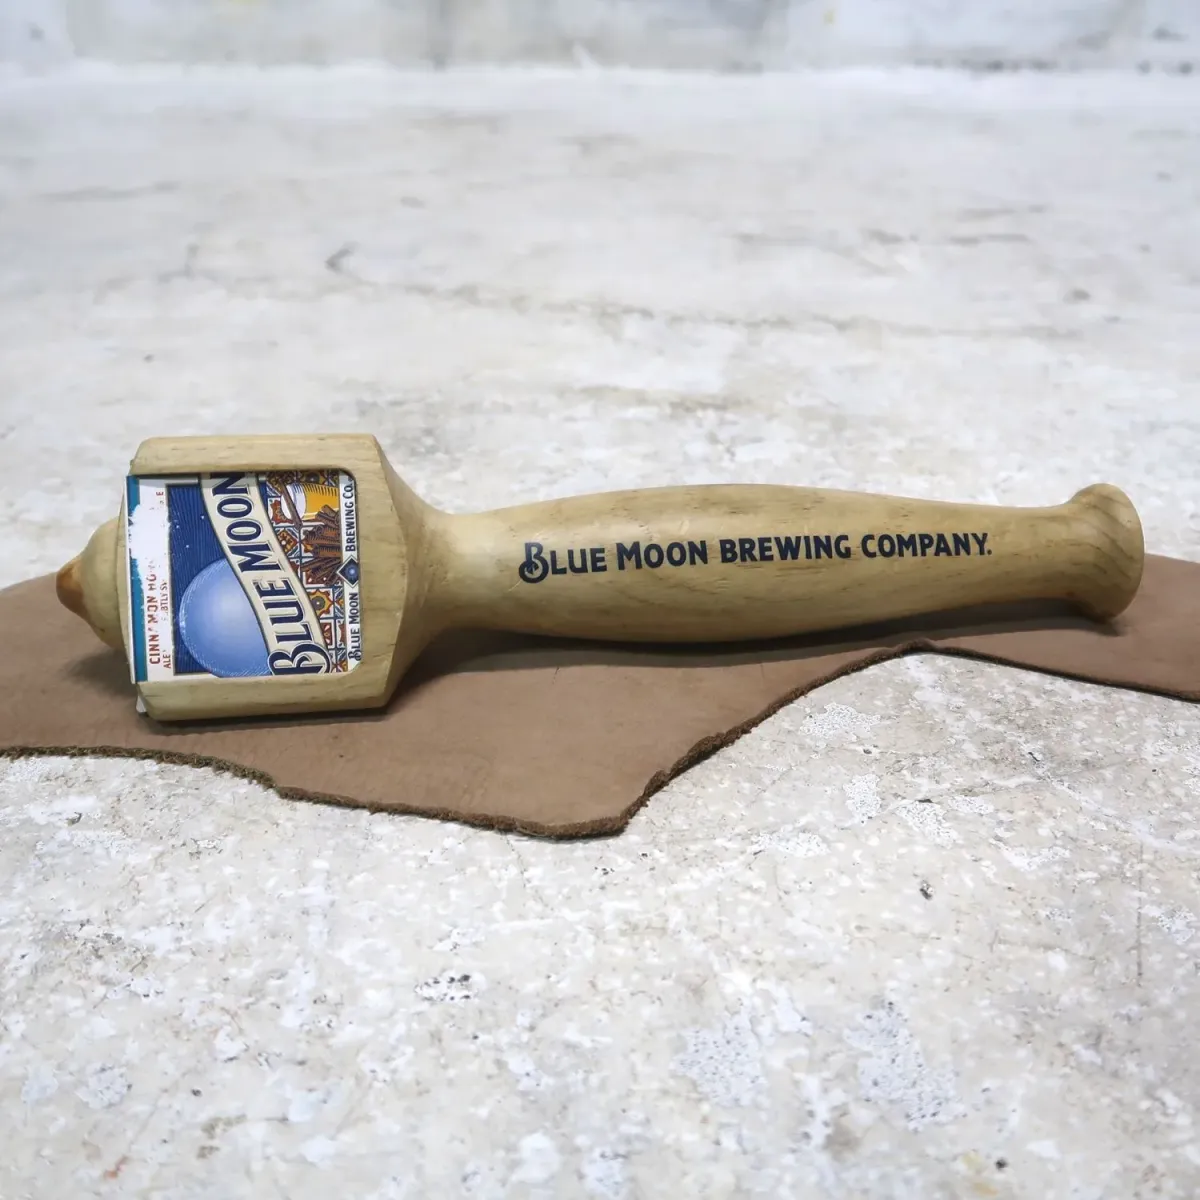 BLUE MOON ビールサーバーノブ